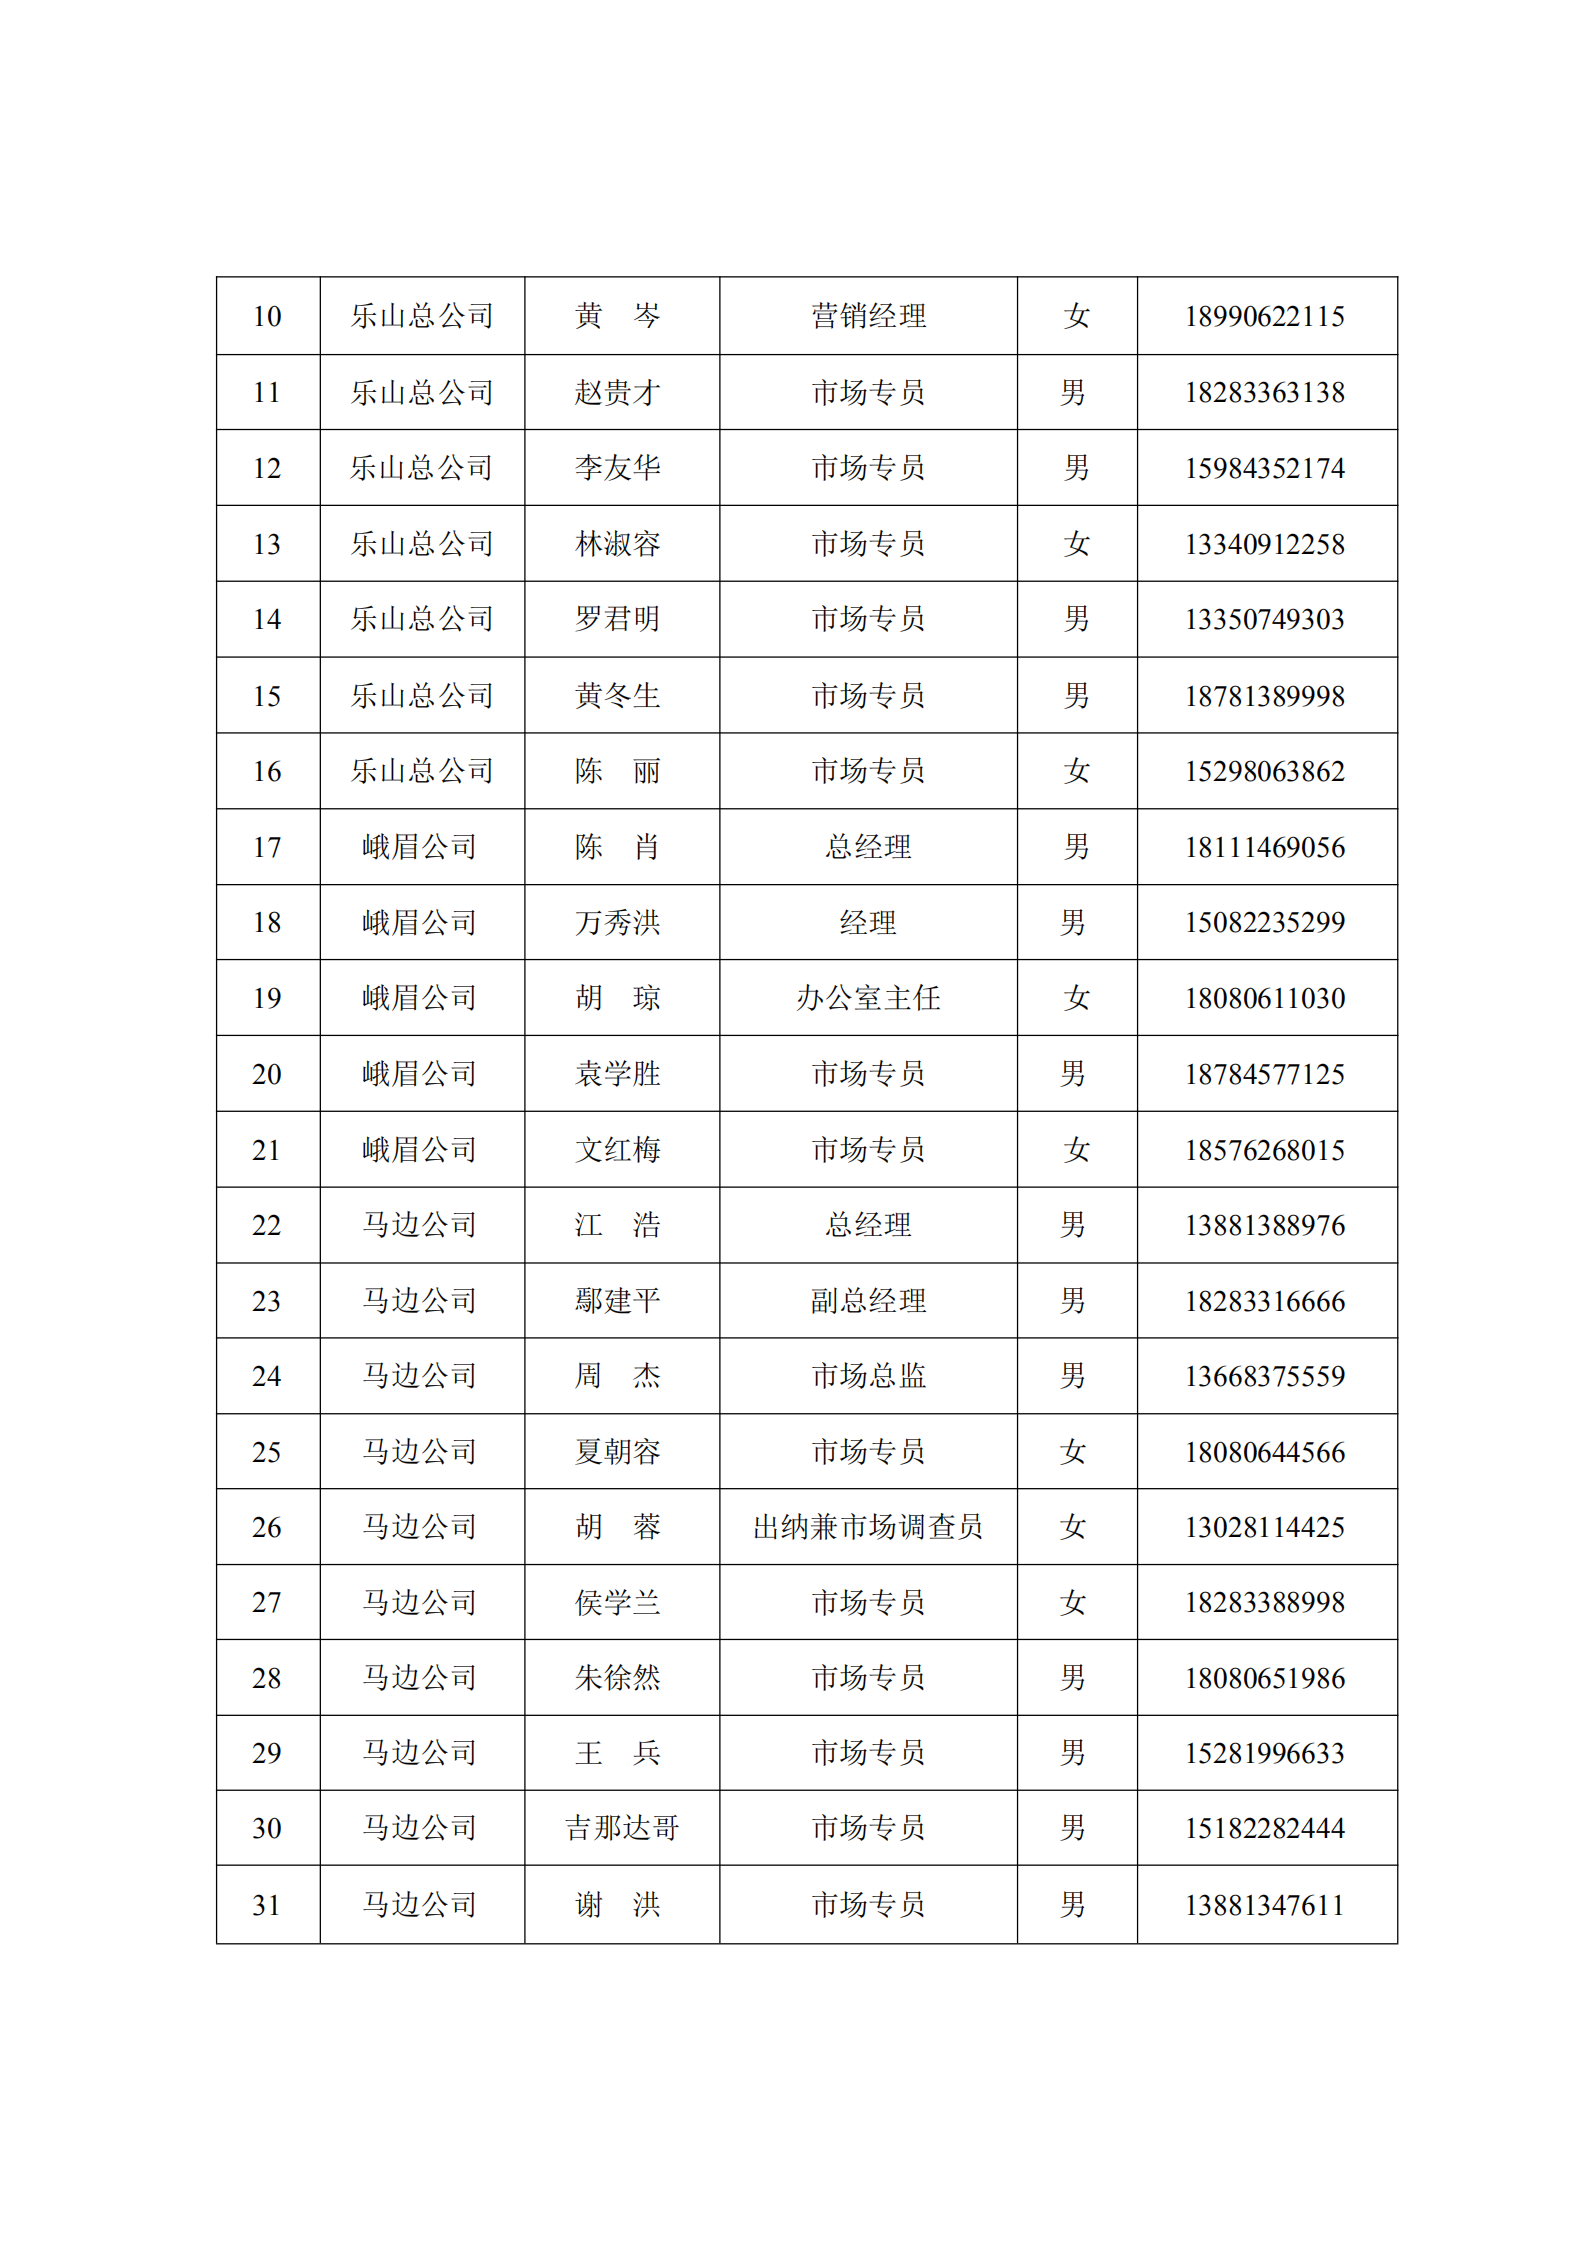 红头-万通利源工作人员名单(2)_01.png